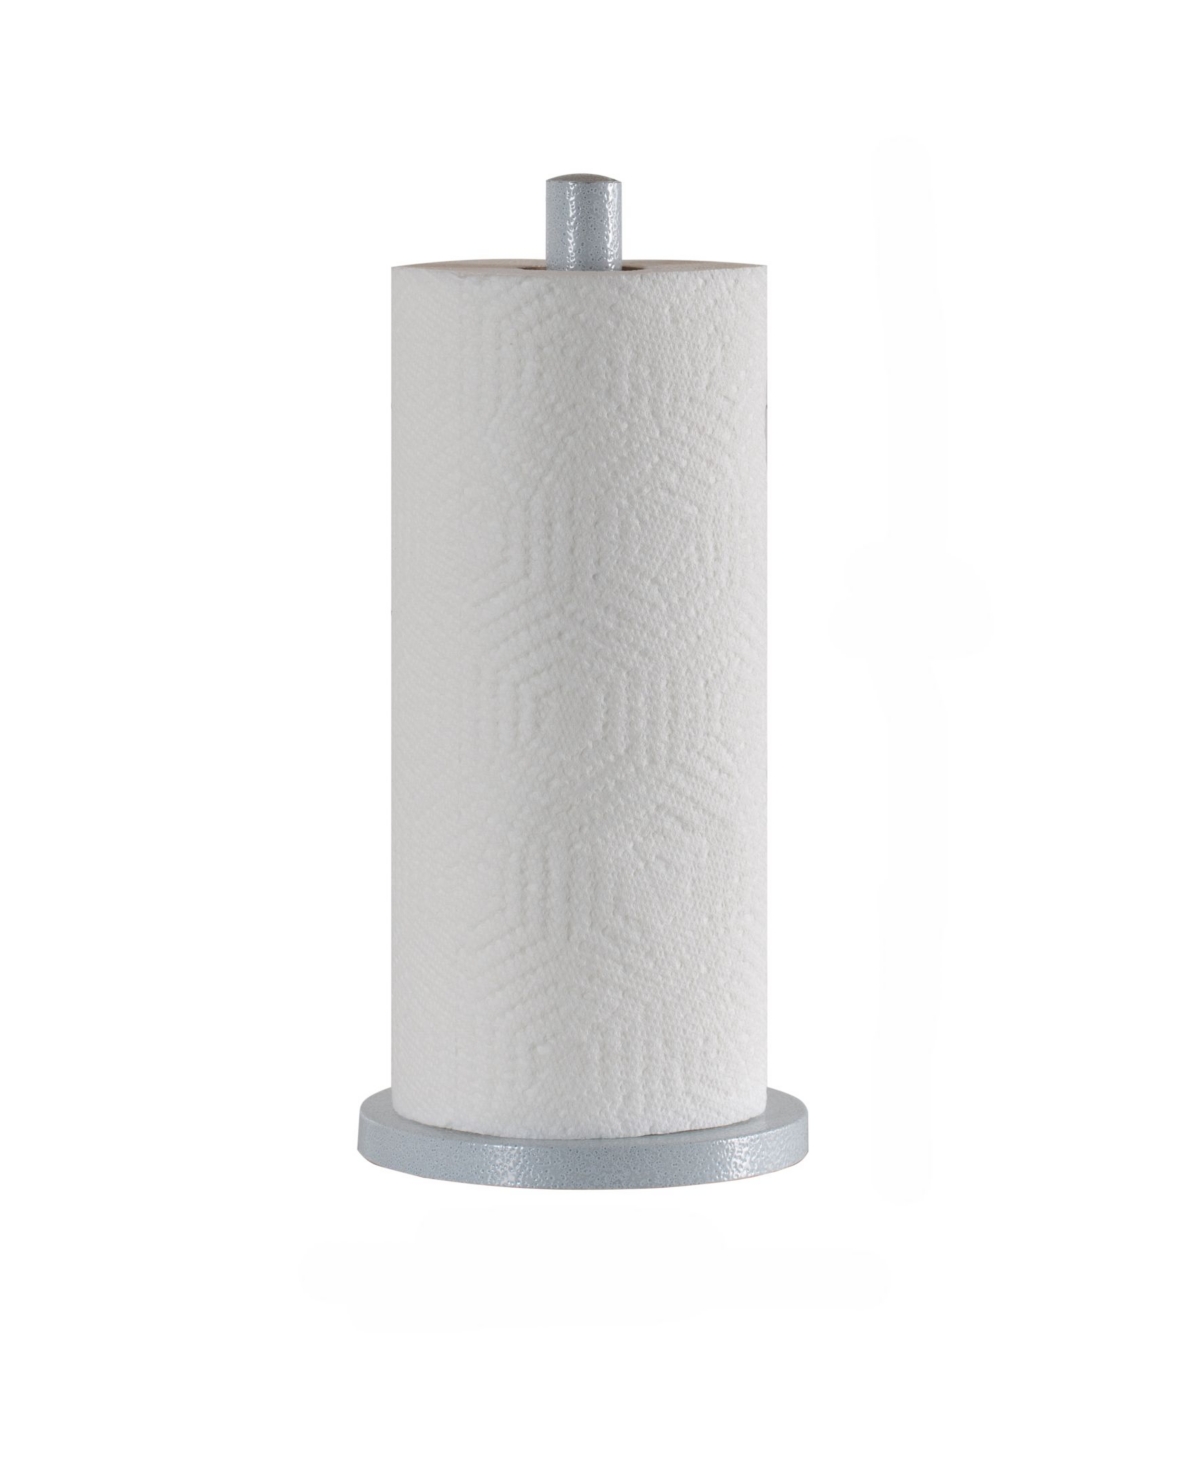 Speckled Paper Towel Holder - Light Gray